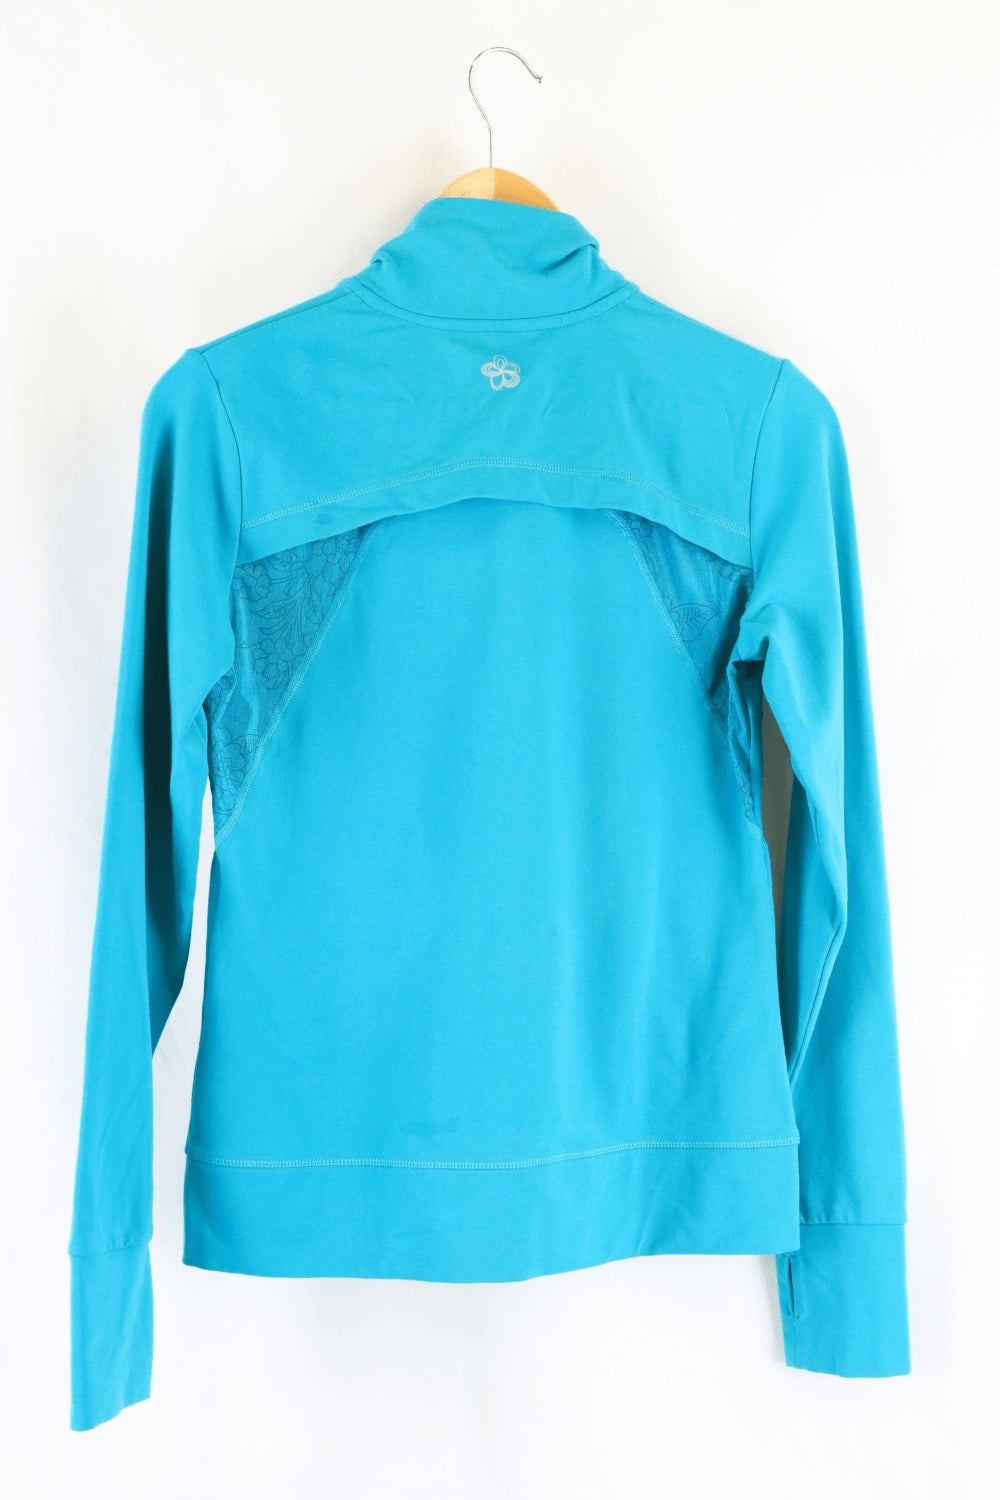 Tuff Athletics Blue Jacket S - Reluv Clothing Australia